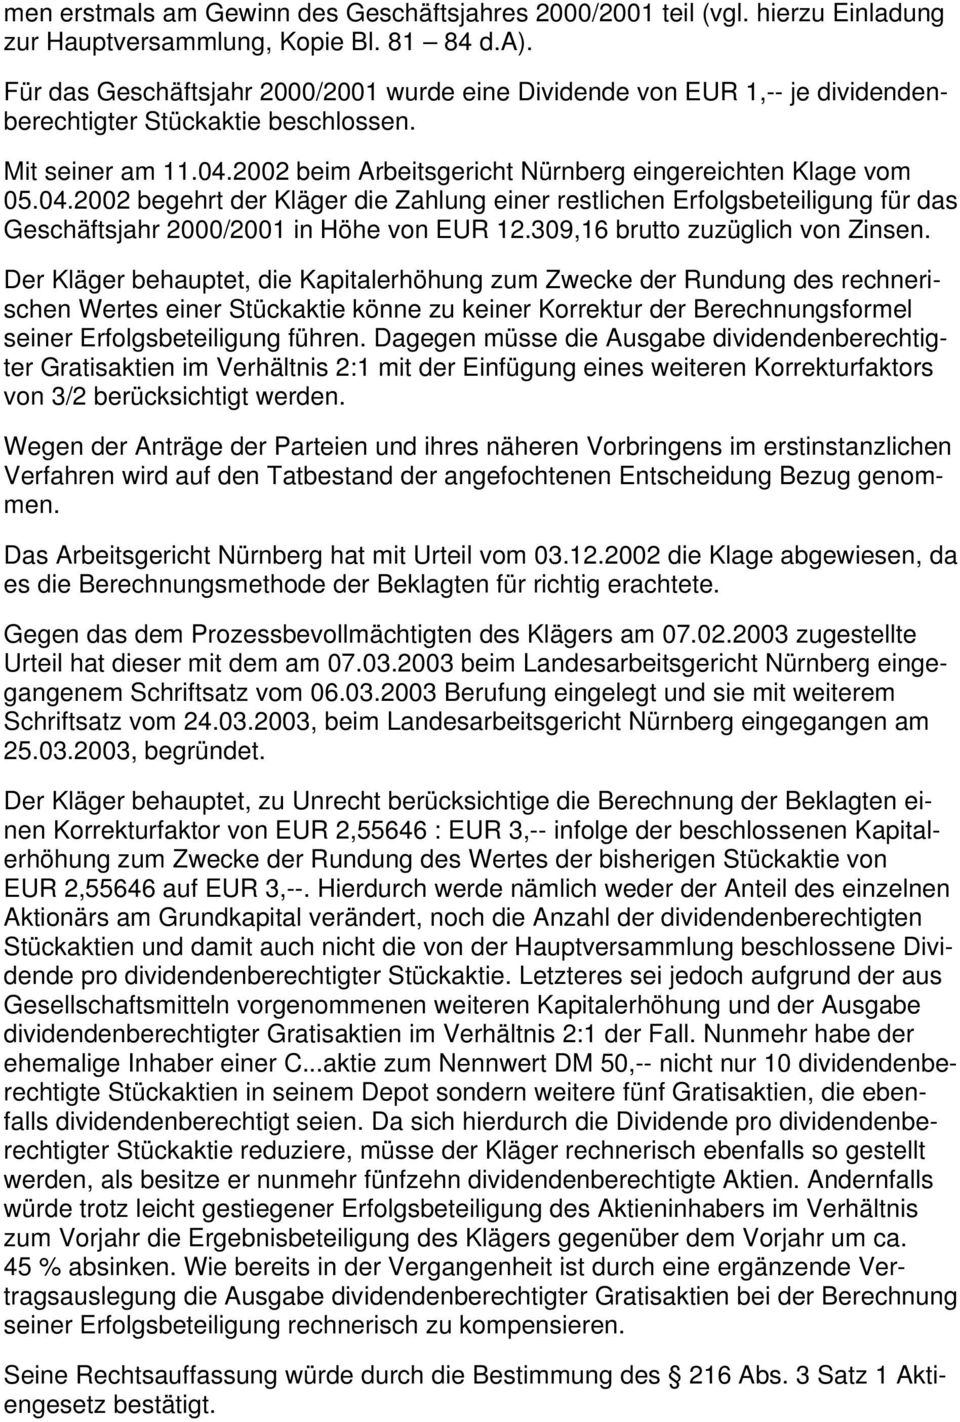 2002 beim Arbeitsgericht Nürnberg eingereichten Klage vom 05.04.2002 begehrt der Kläger die Zahlung einer restlichen Erfolgsbeteiligung für das Geschäftsjahr 2000/2001 in Höhe von EUR 12.